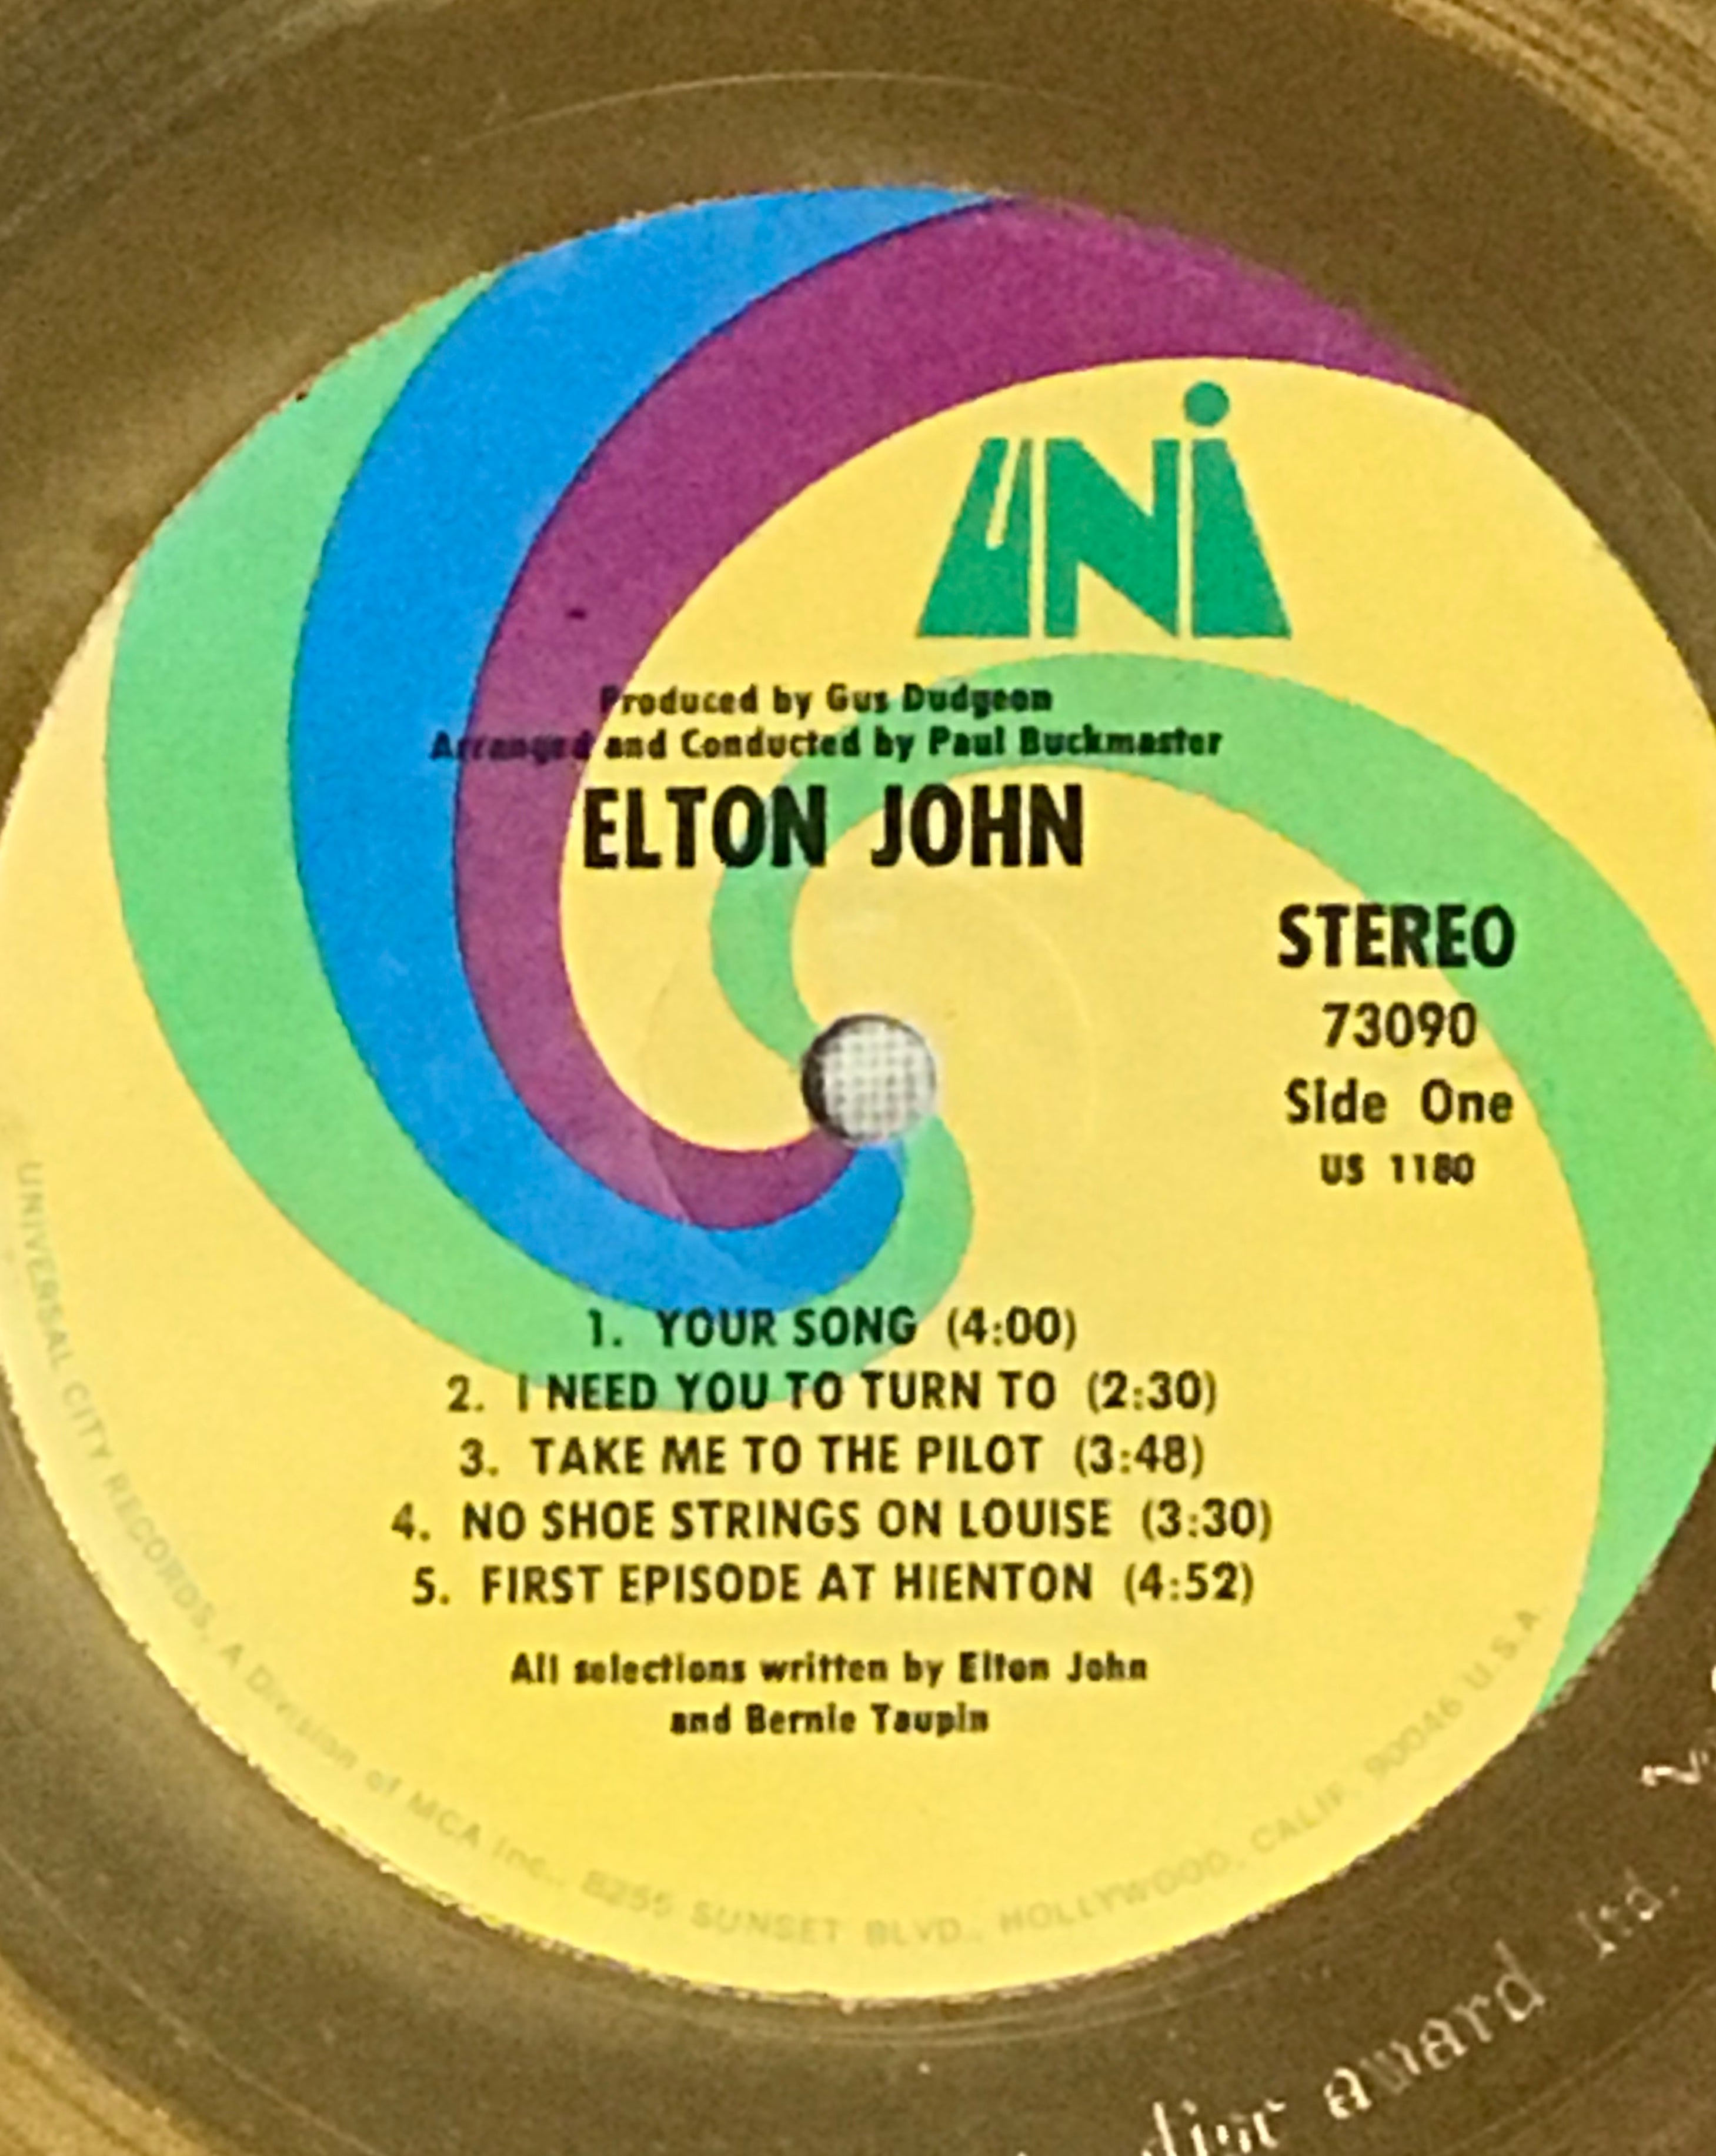 Elton John debut album track list from label